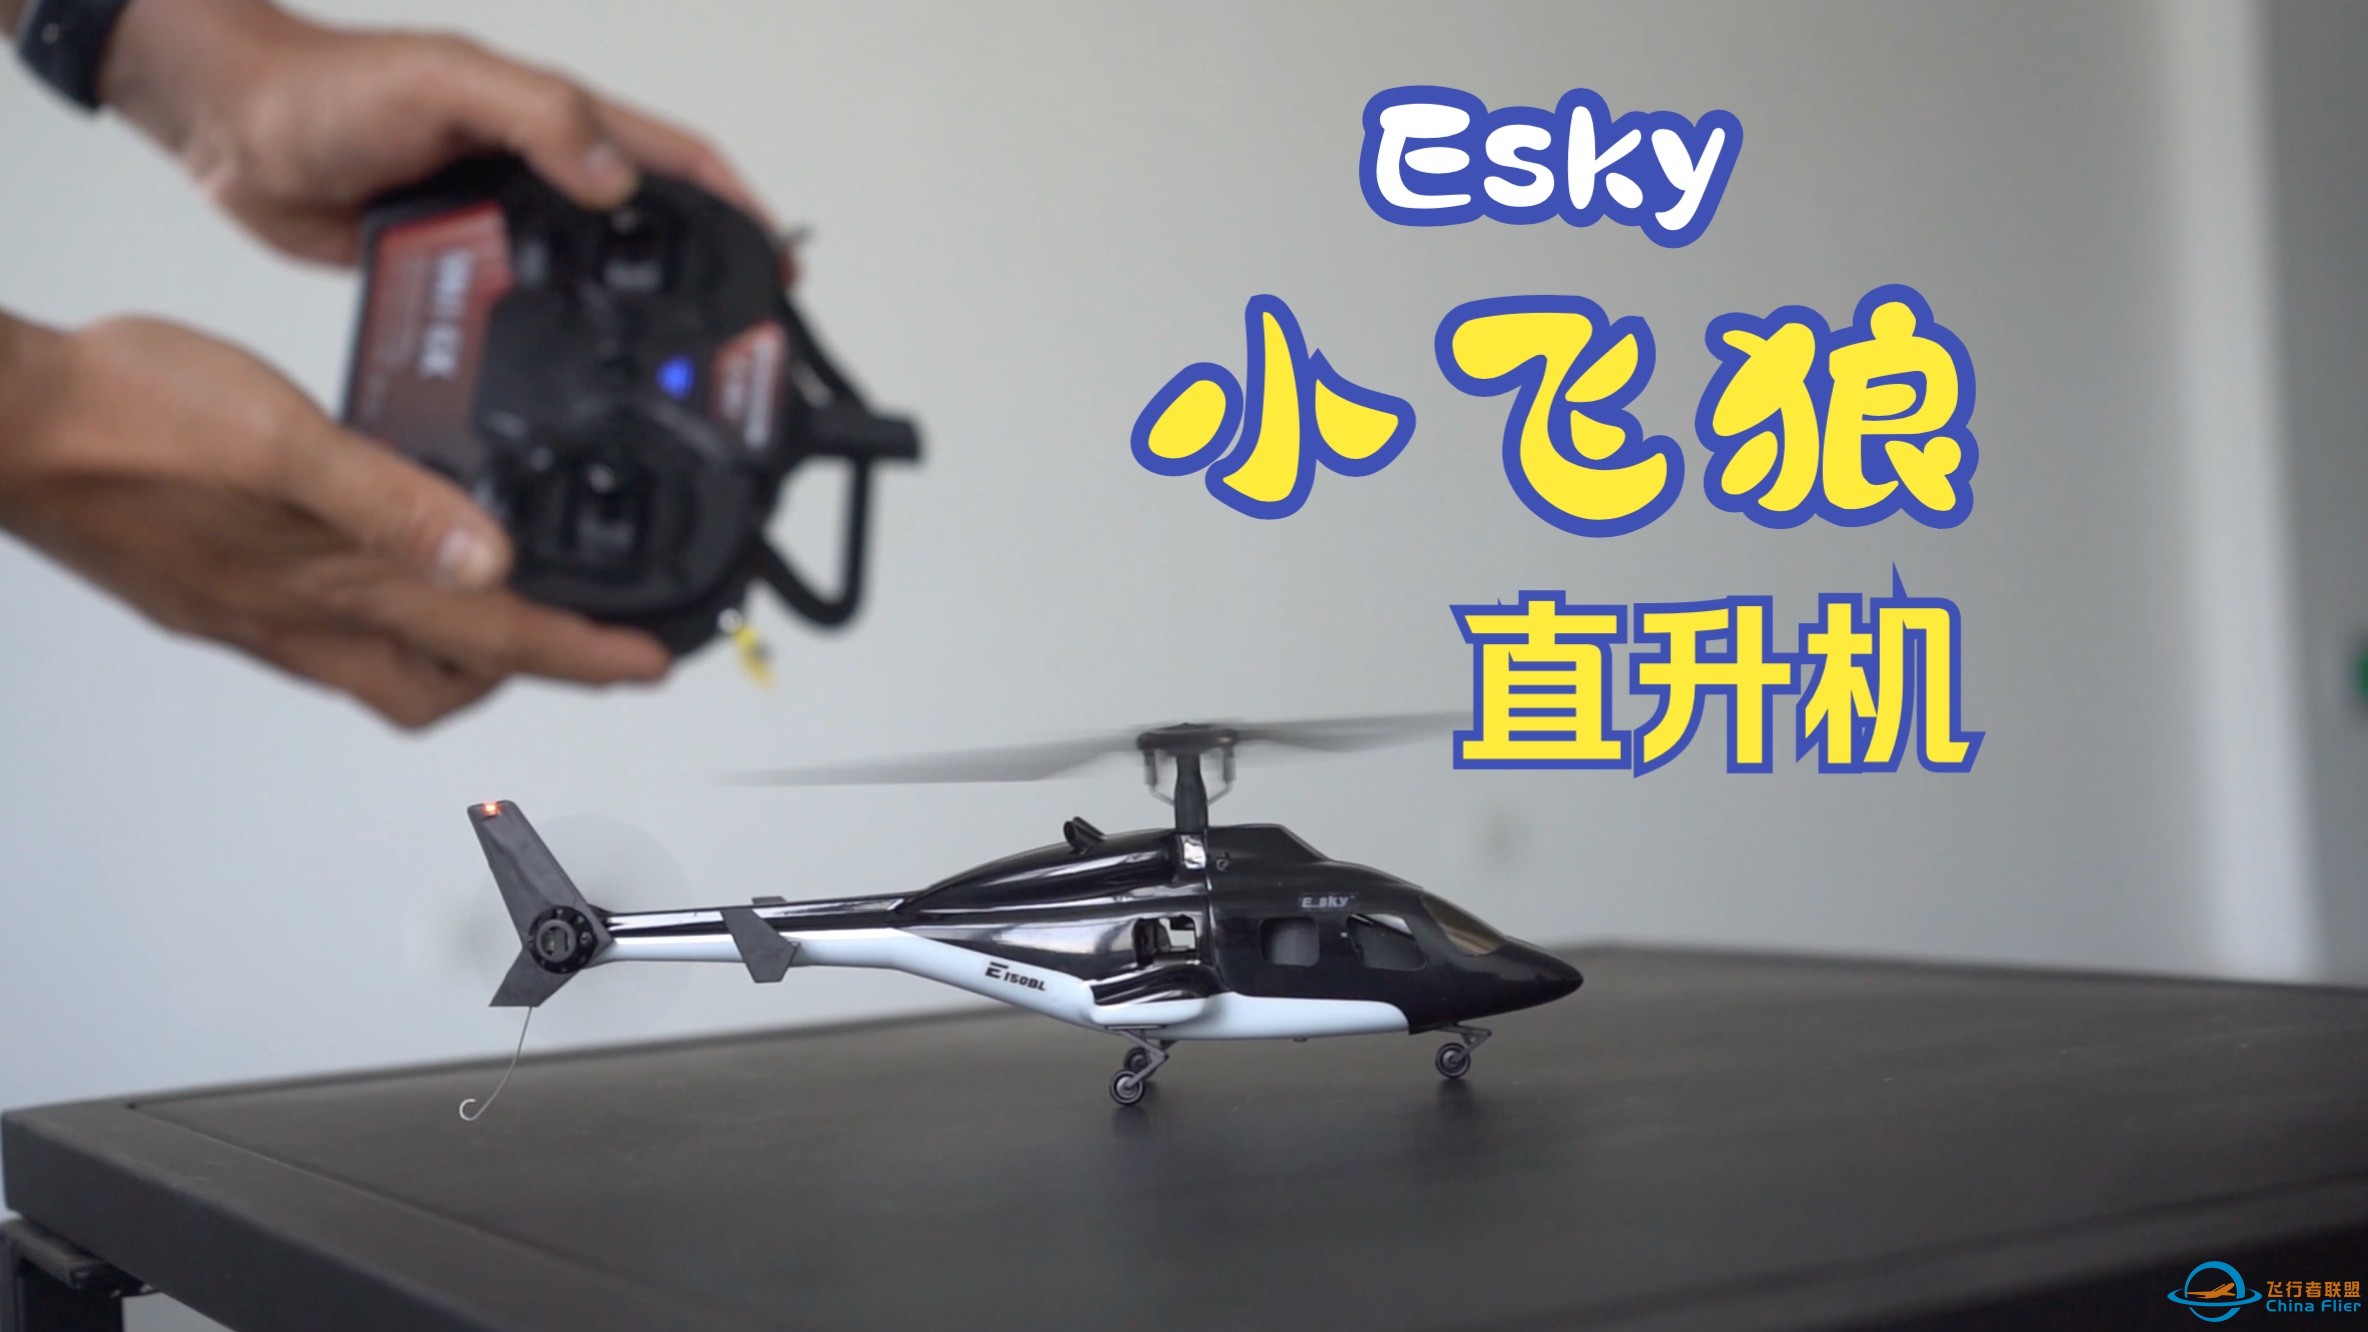 【航模】小小像真机 Esky小飞狼遥控直升机-1.jpg